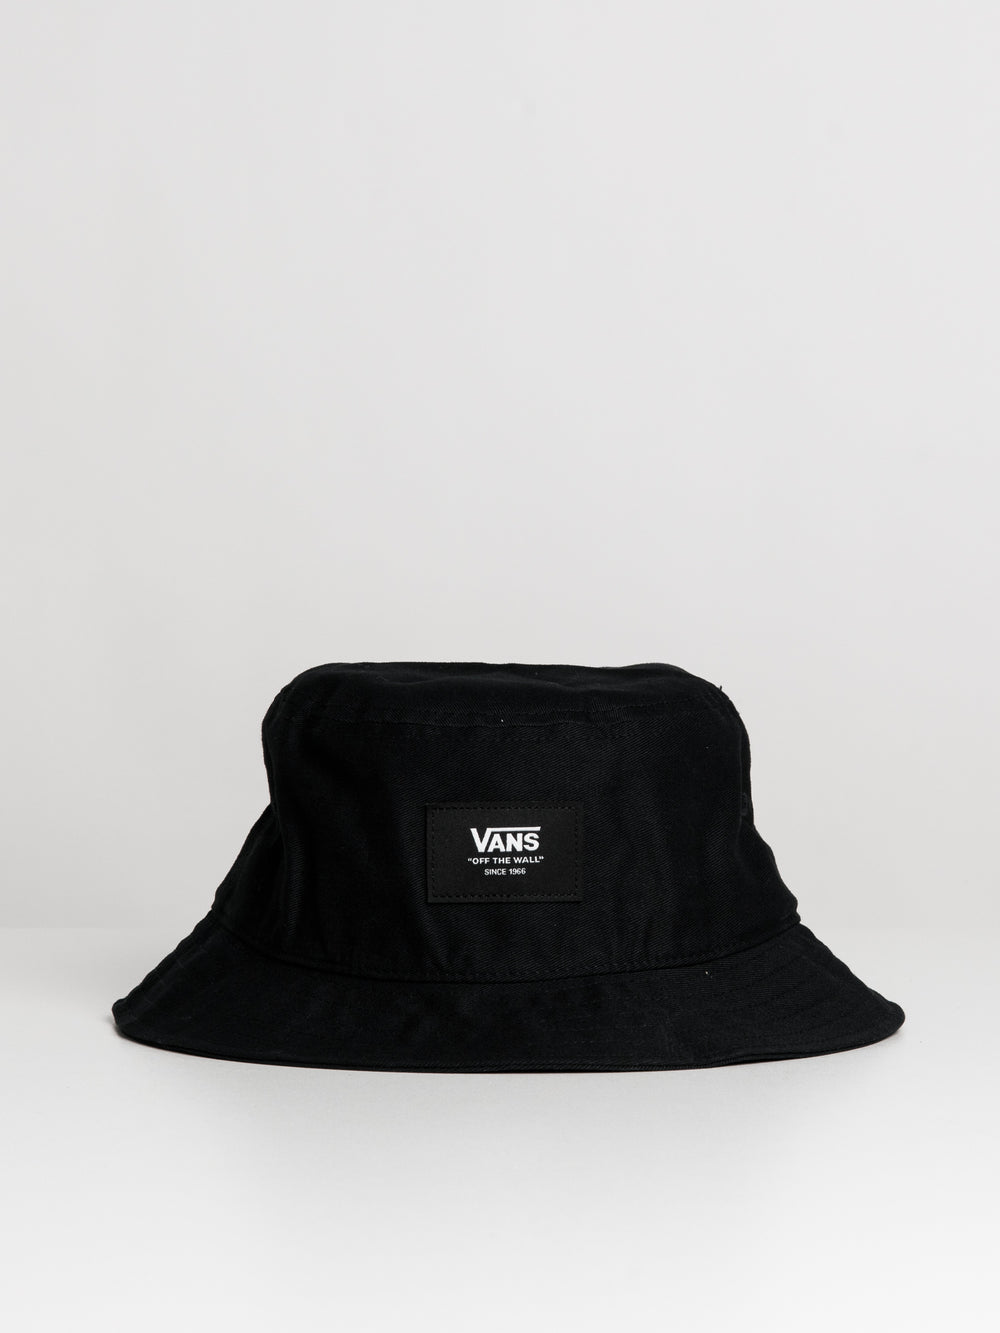 VANS PATCH BUCKET HAT - BLACK